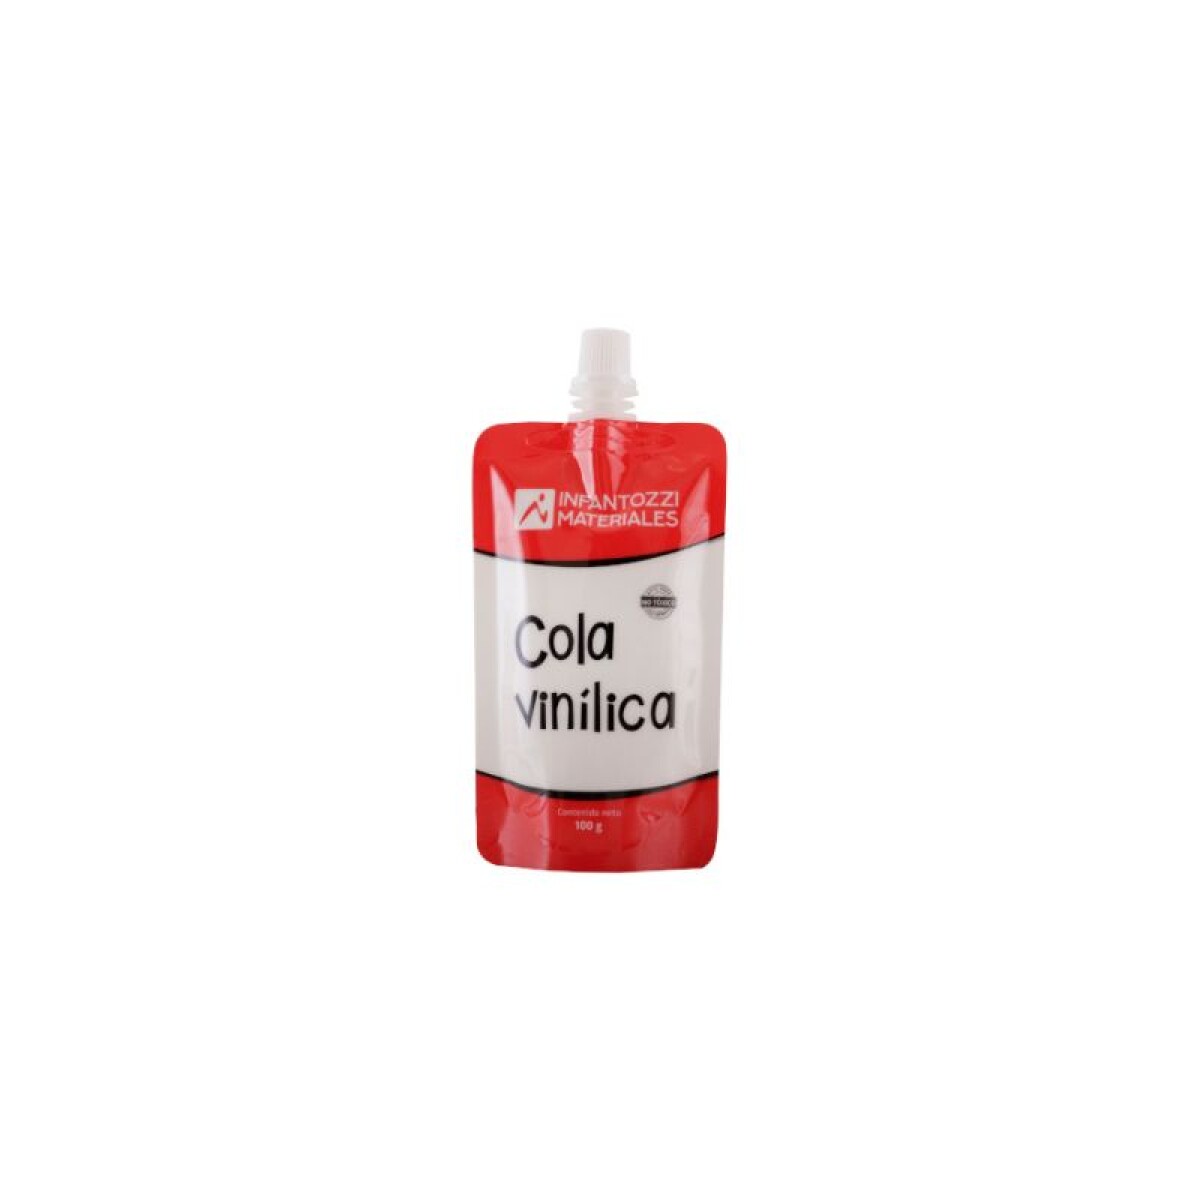 Cola vinílica escolar - 500 g - Sachet 